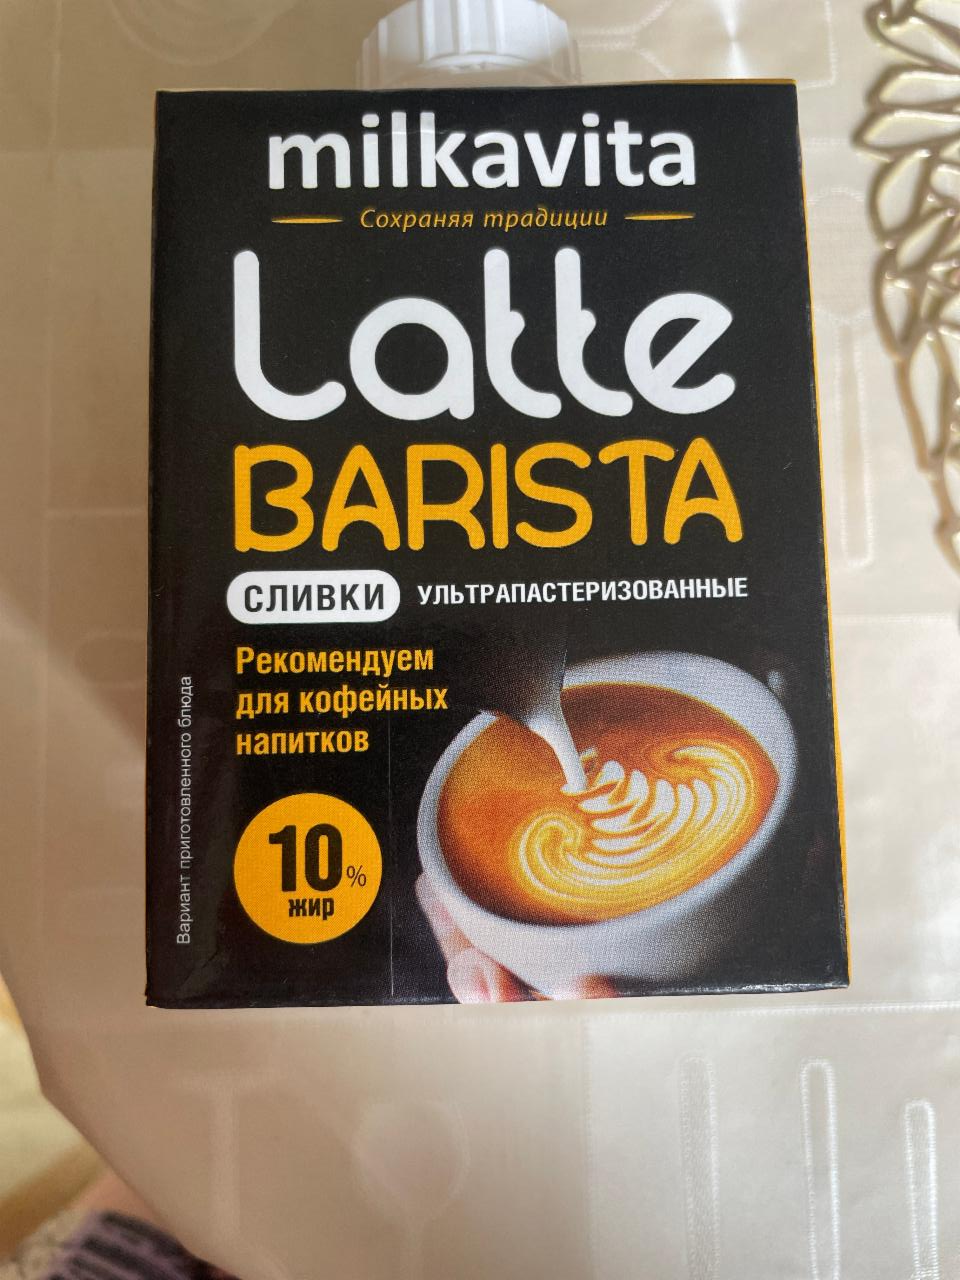 Фото - Сливки 10% Latte barista Milkavita